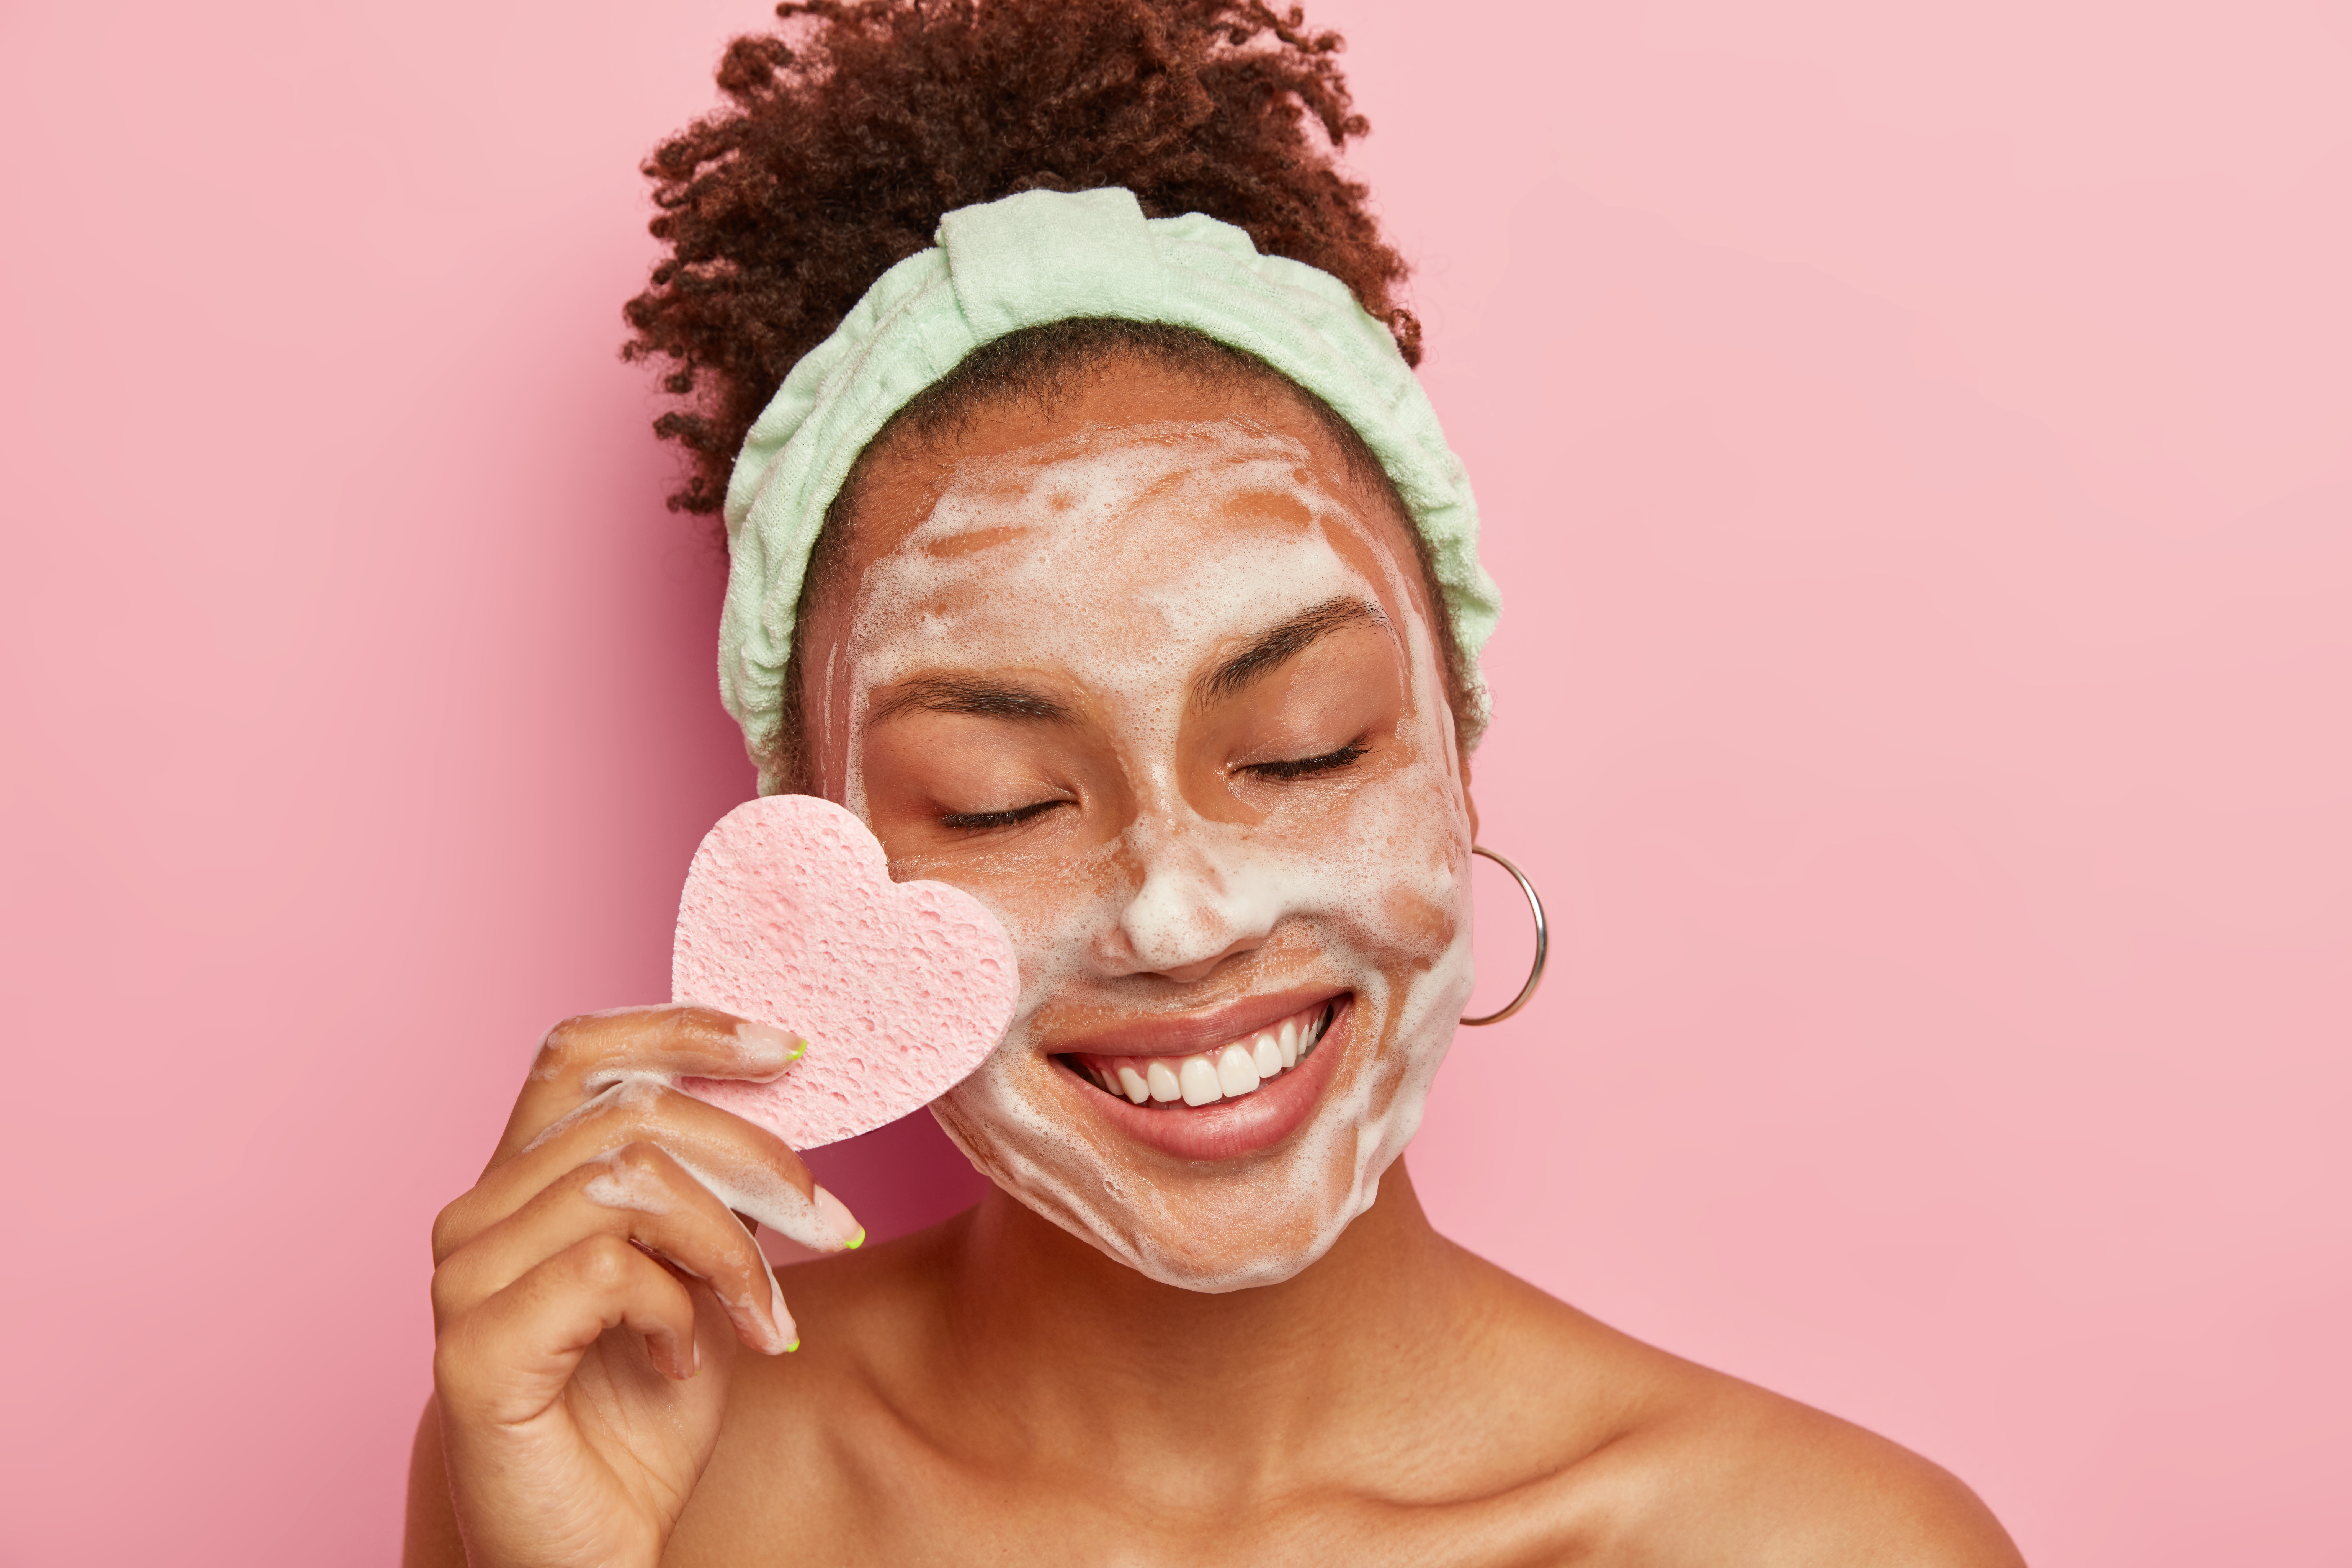 Doble limpieza facial: en qué consiste y por qué es importante hacerla